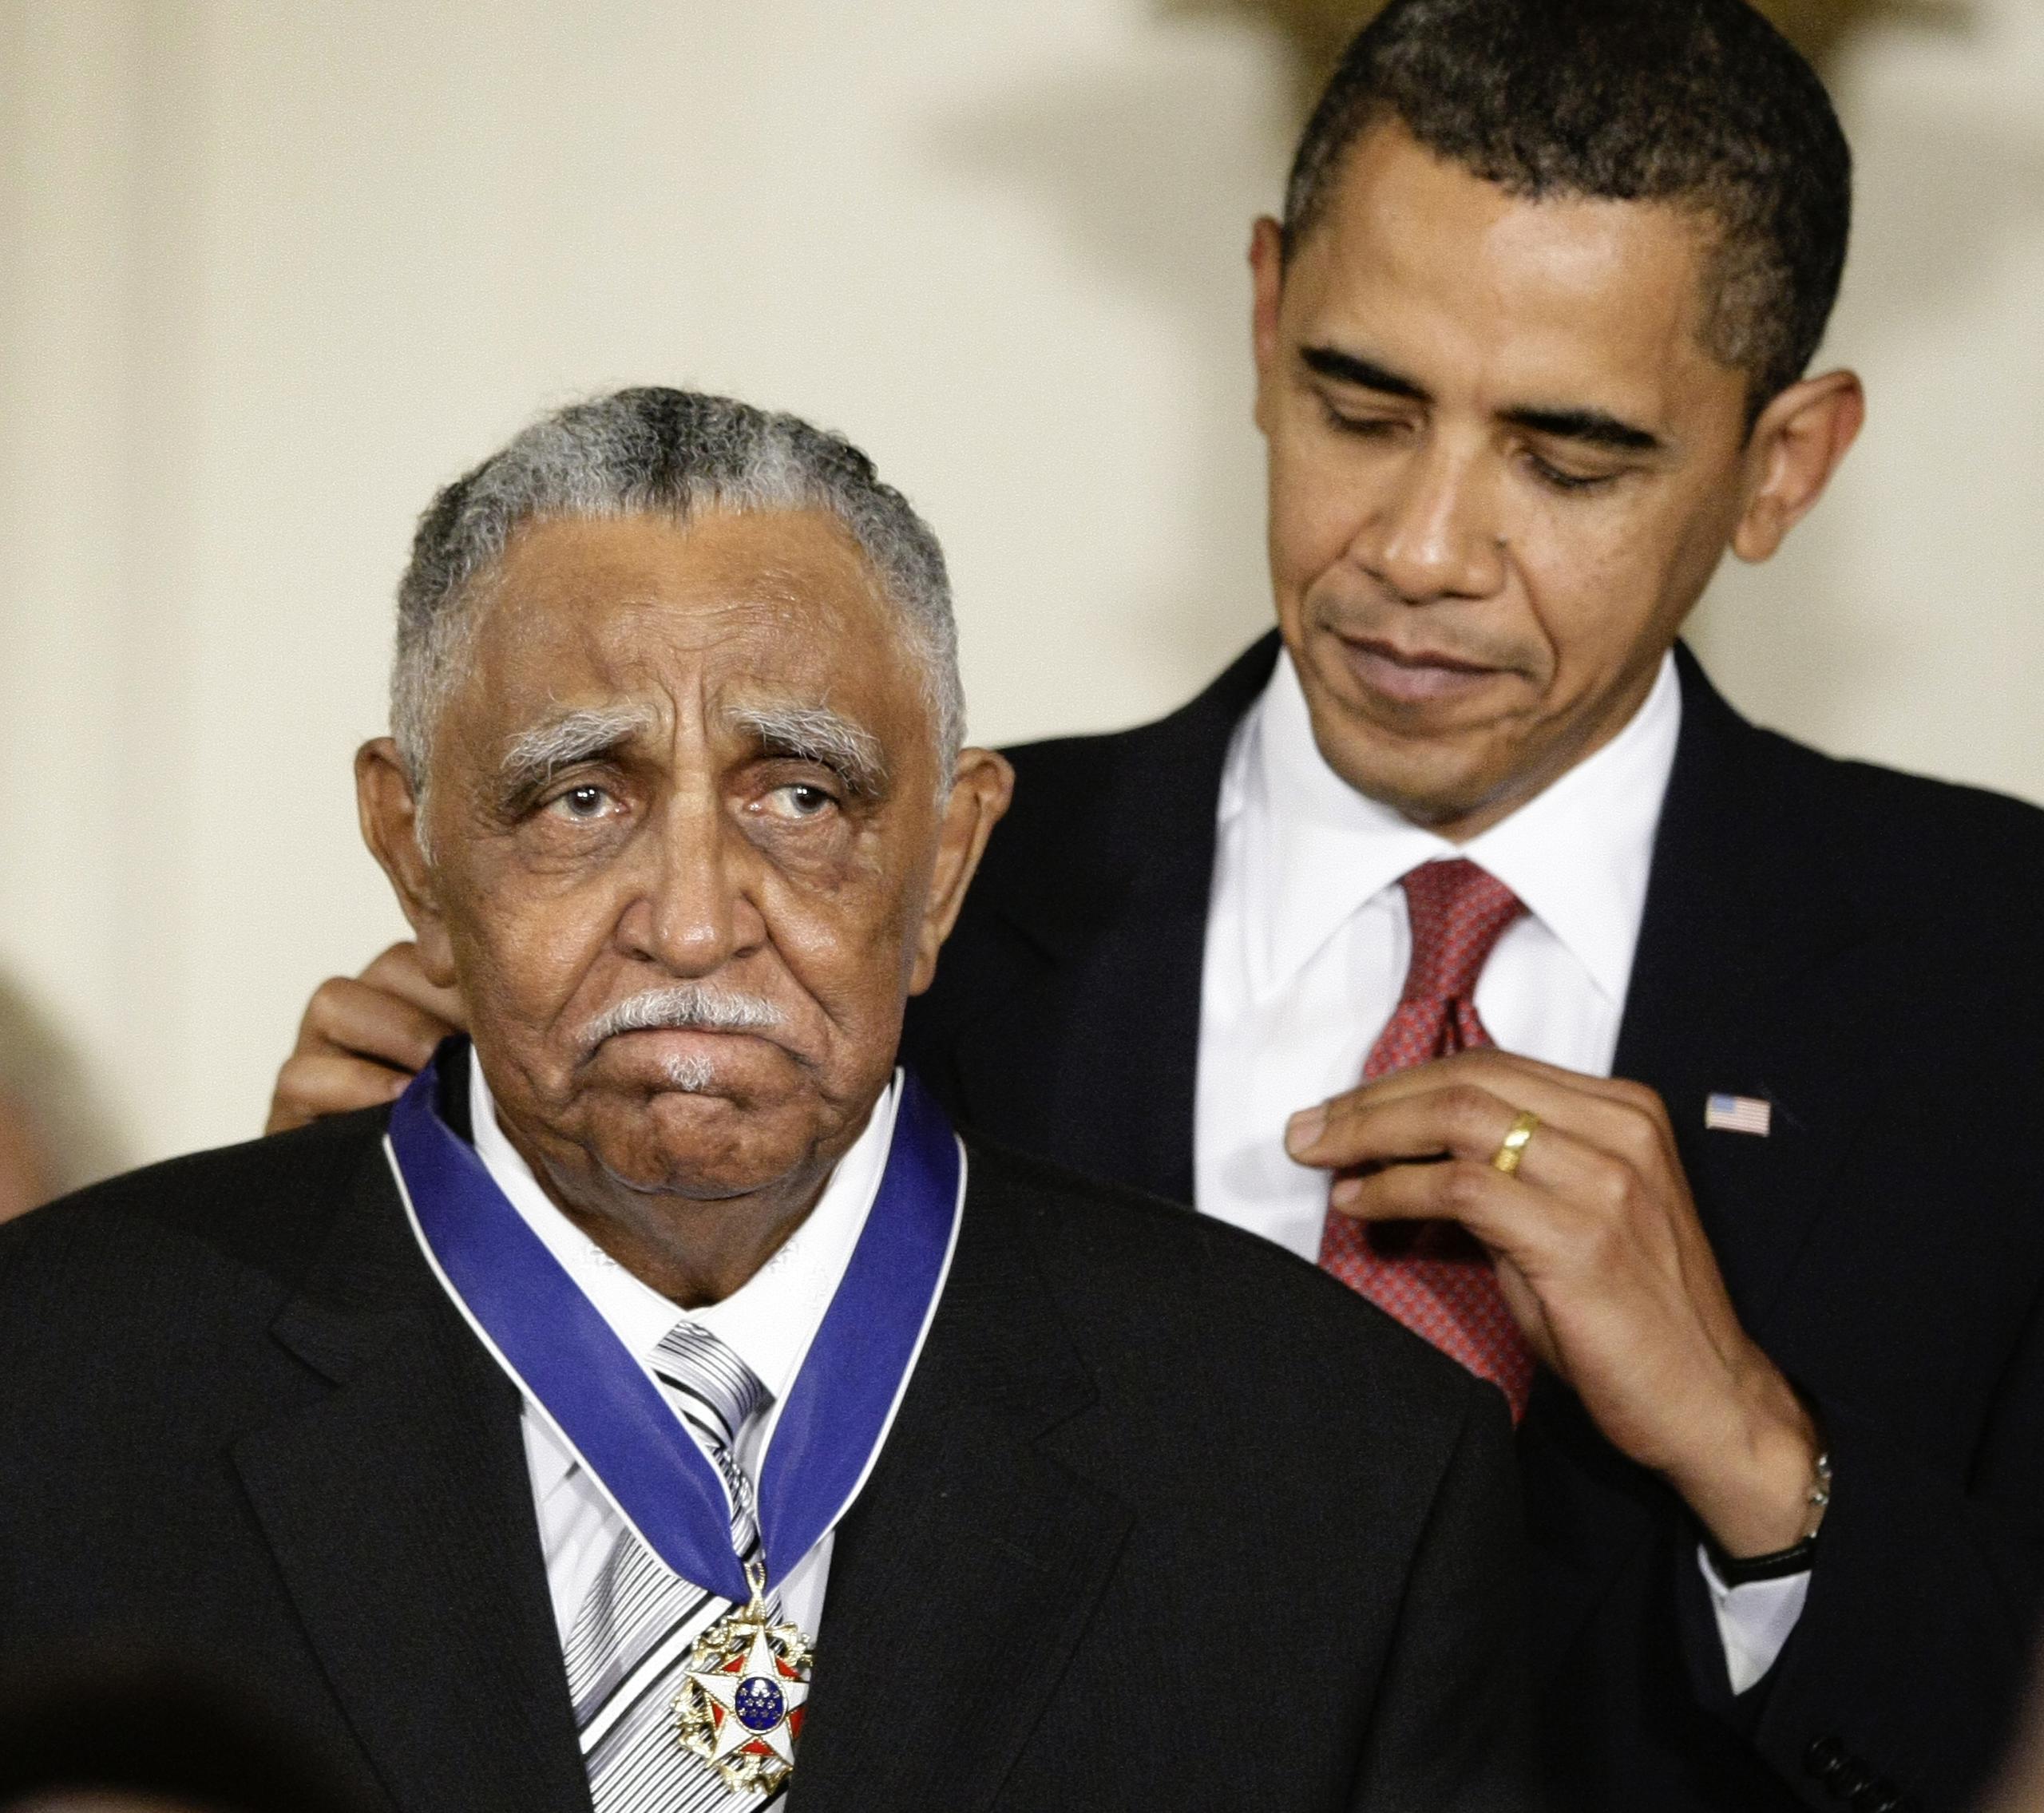 En 2009, el entonces presidente Barack Obama le concedió a Joseph Lowery la Medalla Presidencial de la Libertad, el mayor honor civil de Estados Unidos.